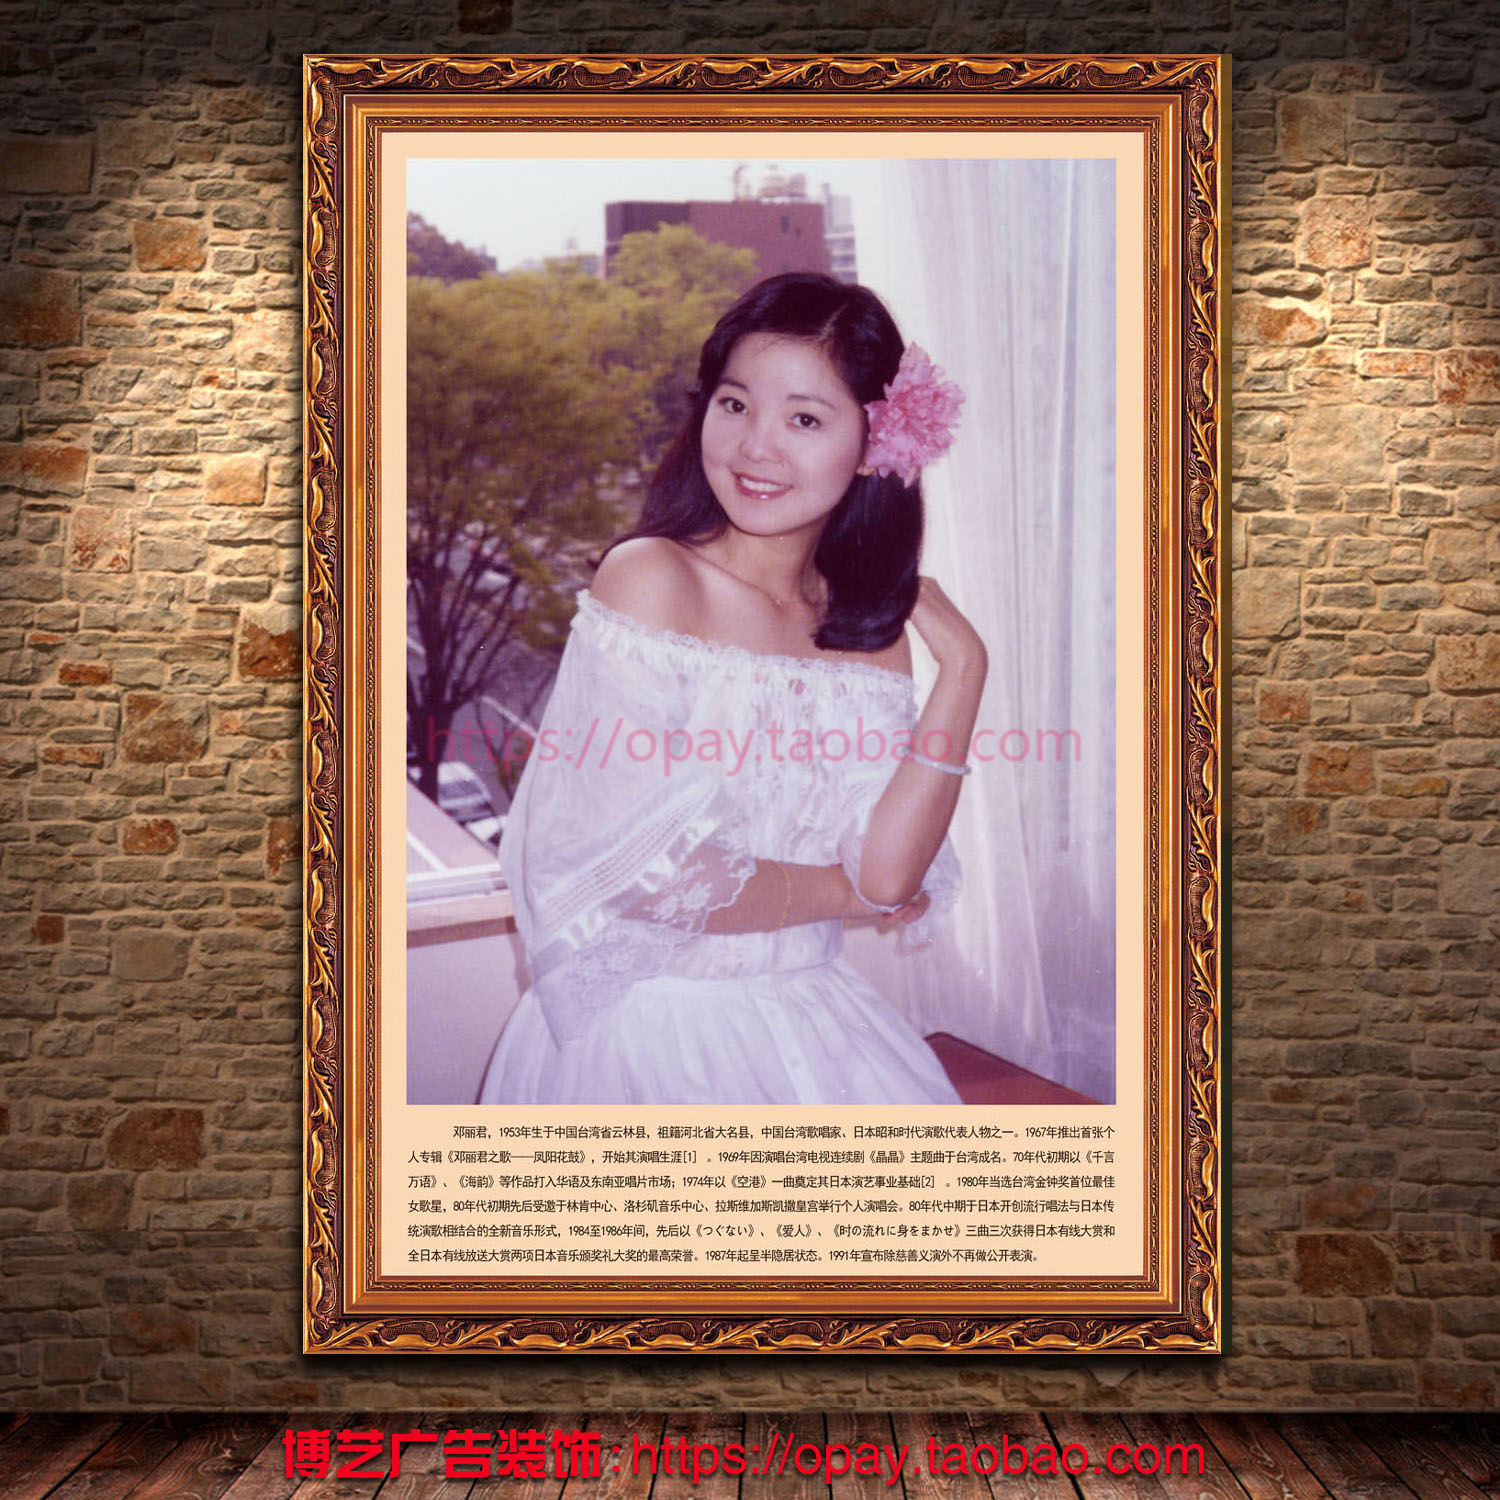 中国台湾歌唱家邓丽君肖像画名星写真简介海报定制装饰相纸墙贴纸折扣优惠信息